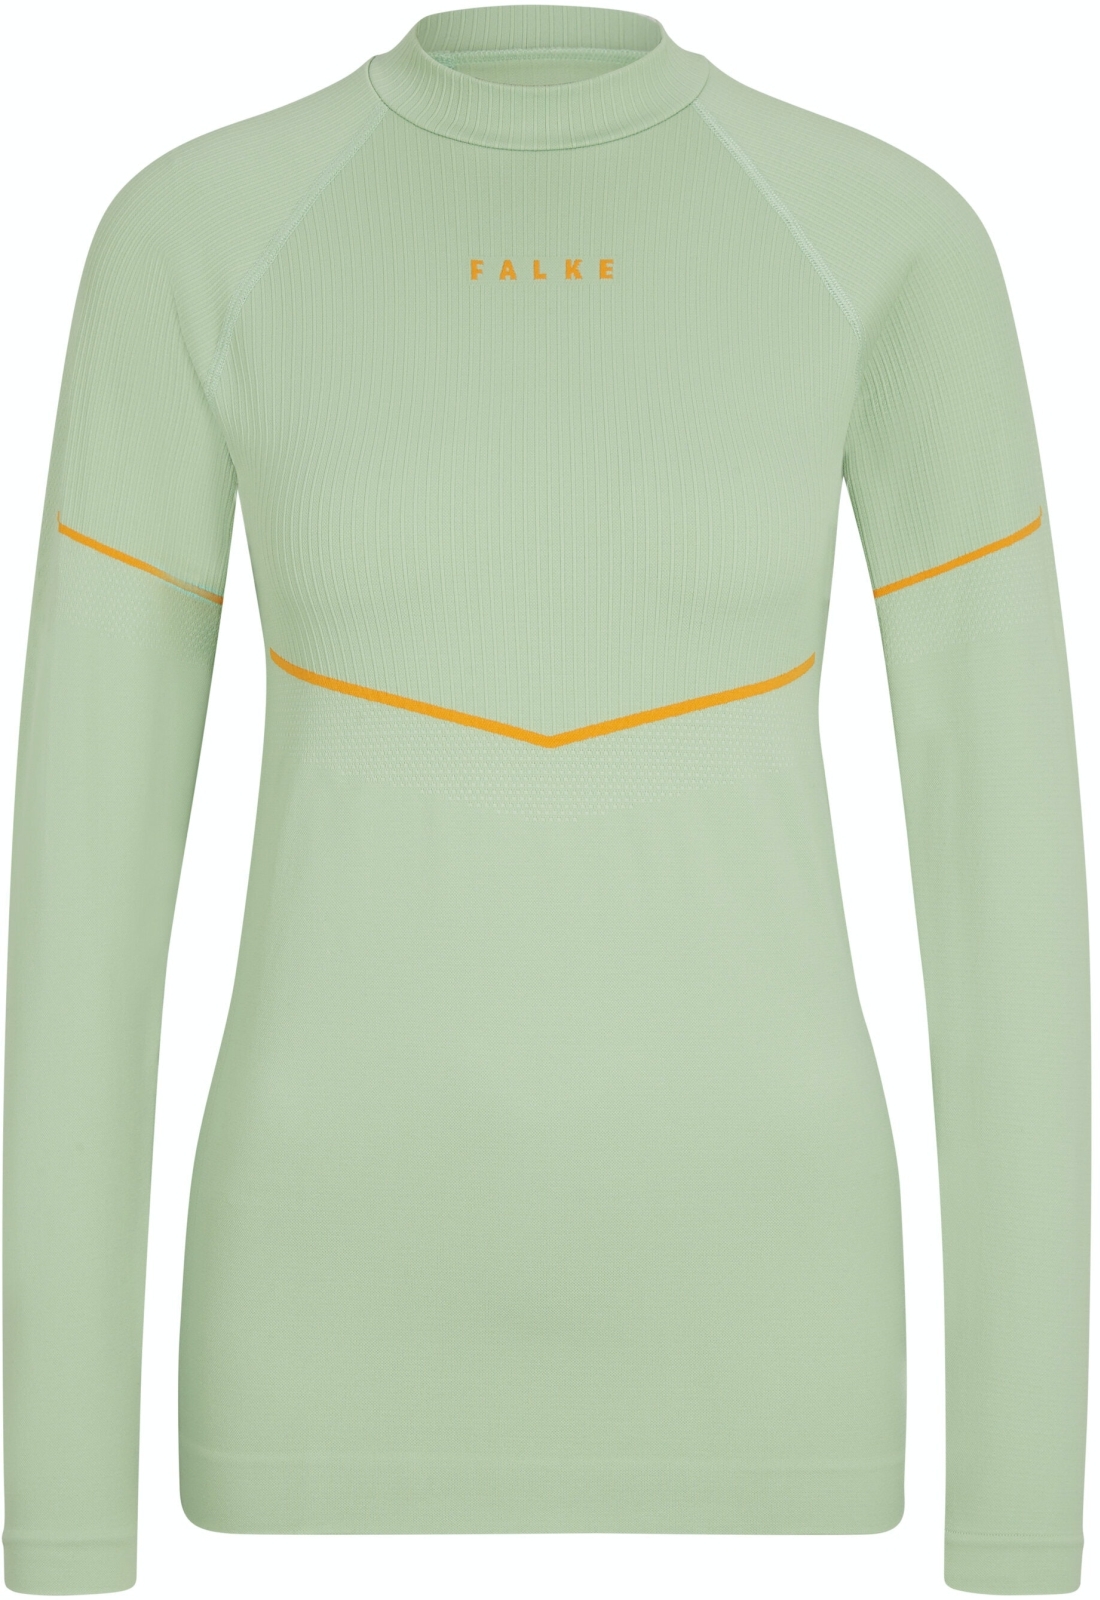 E-shop Falke Women long sleeve Shirt Maximum Warm - quiet green L